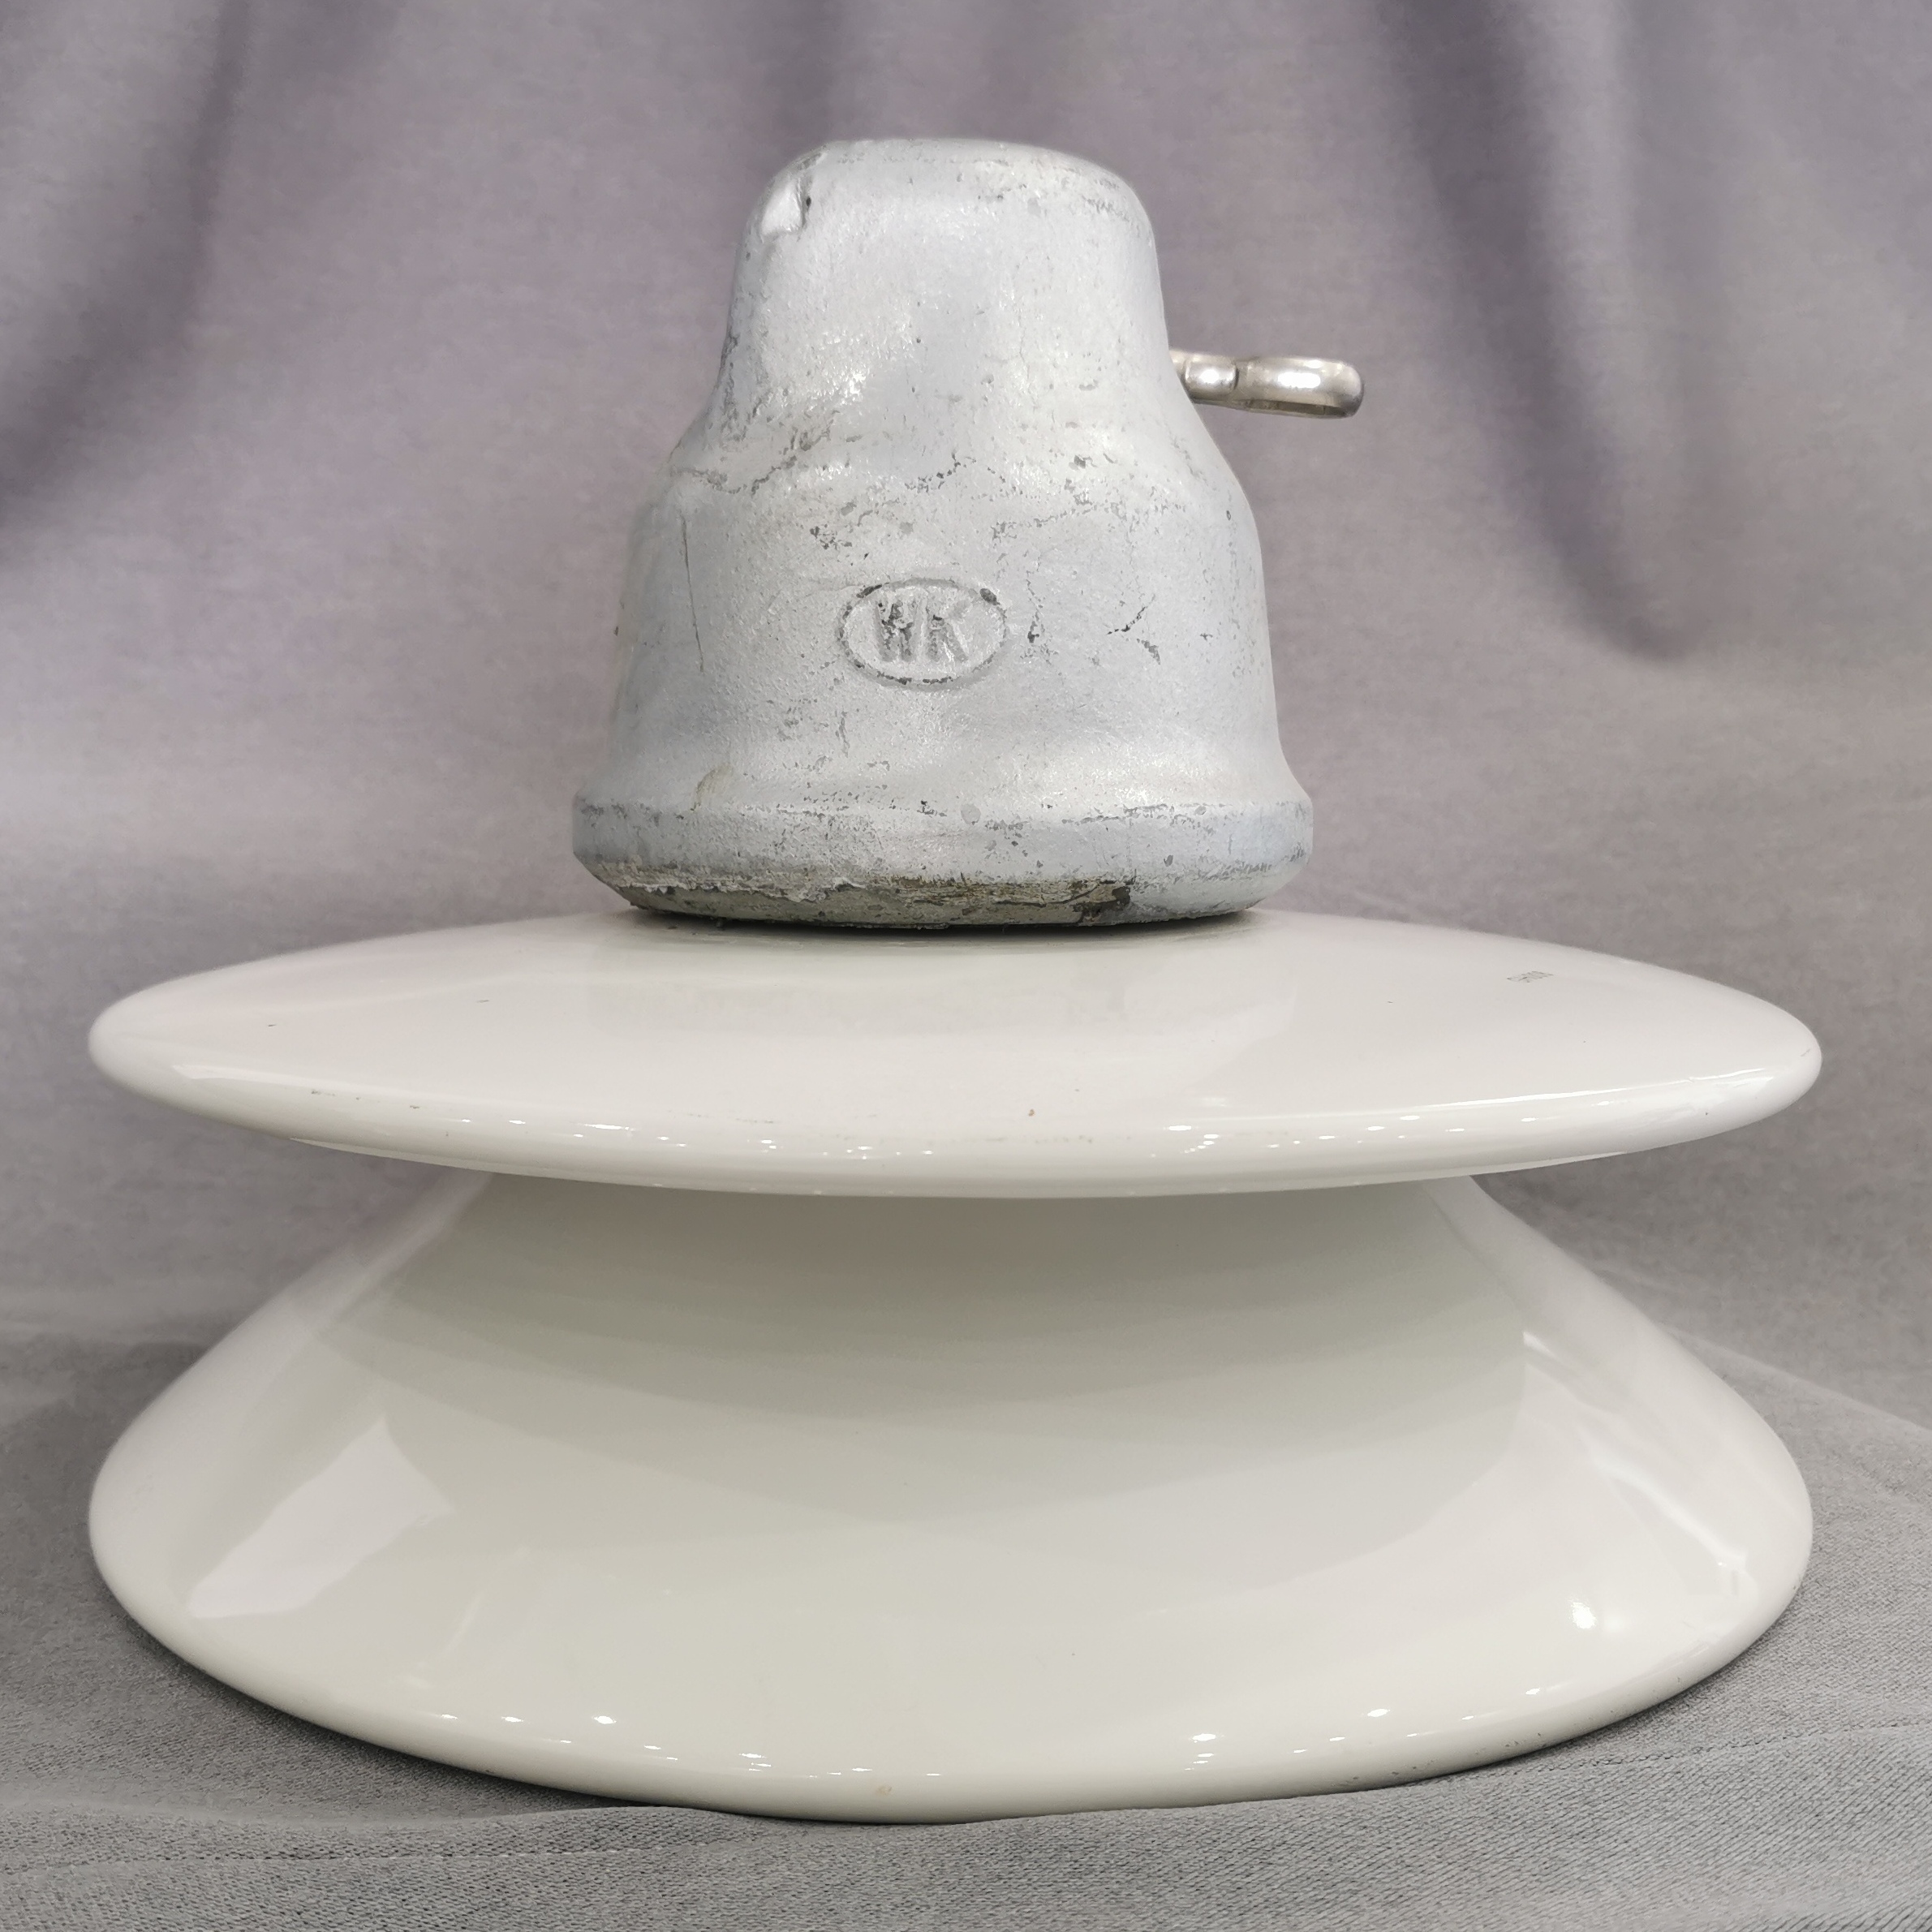 420 KN DC Kōpae whakatārewatanga porcelain insulator